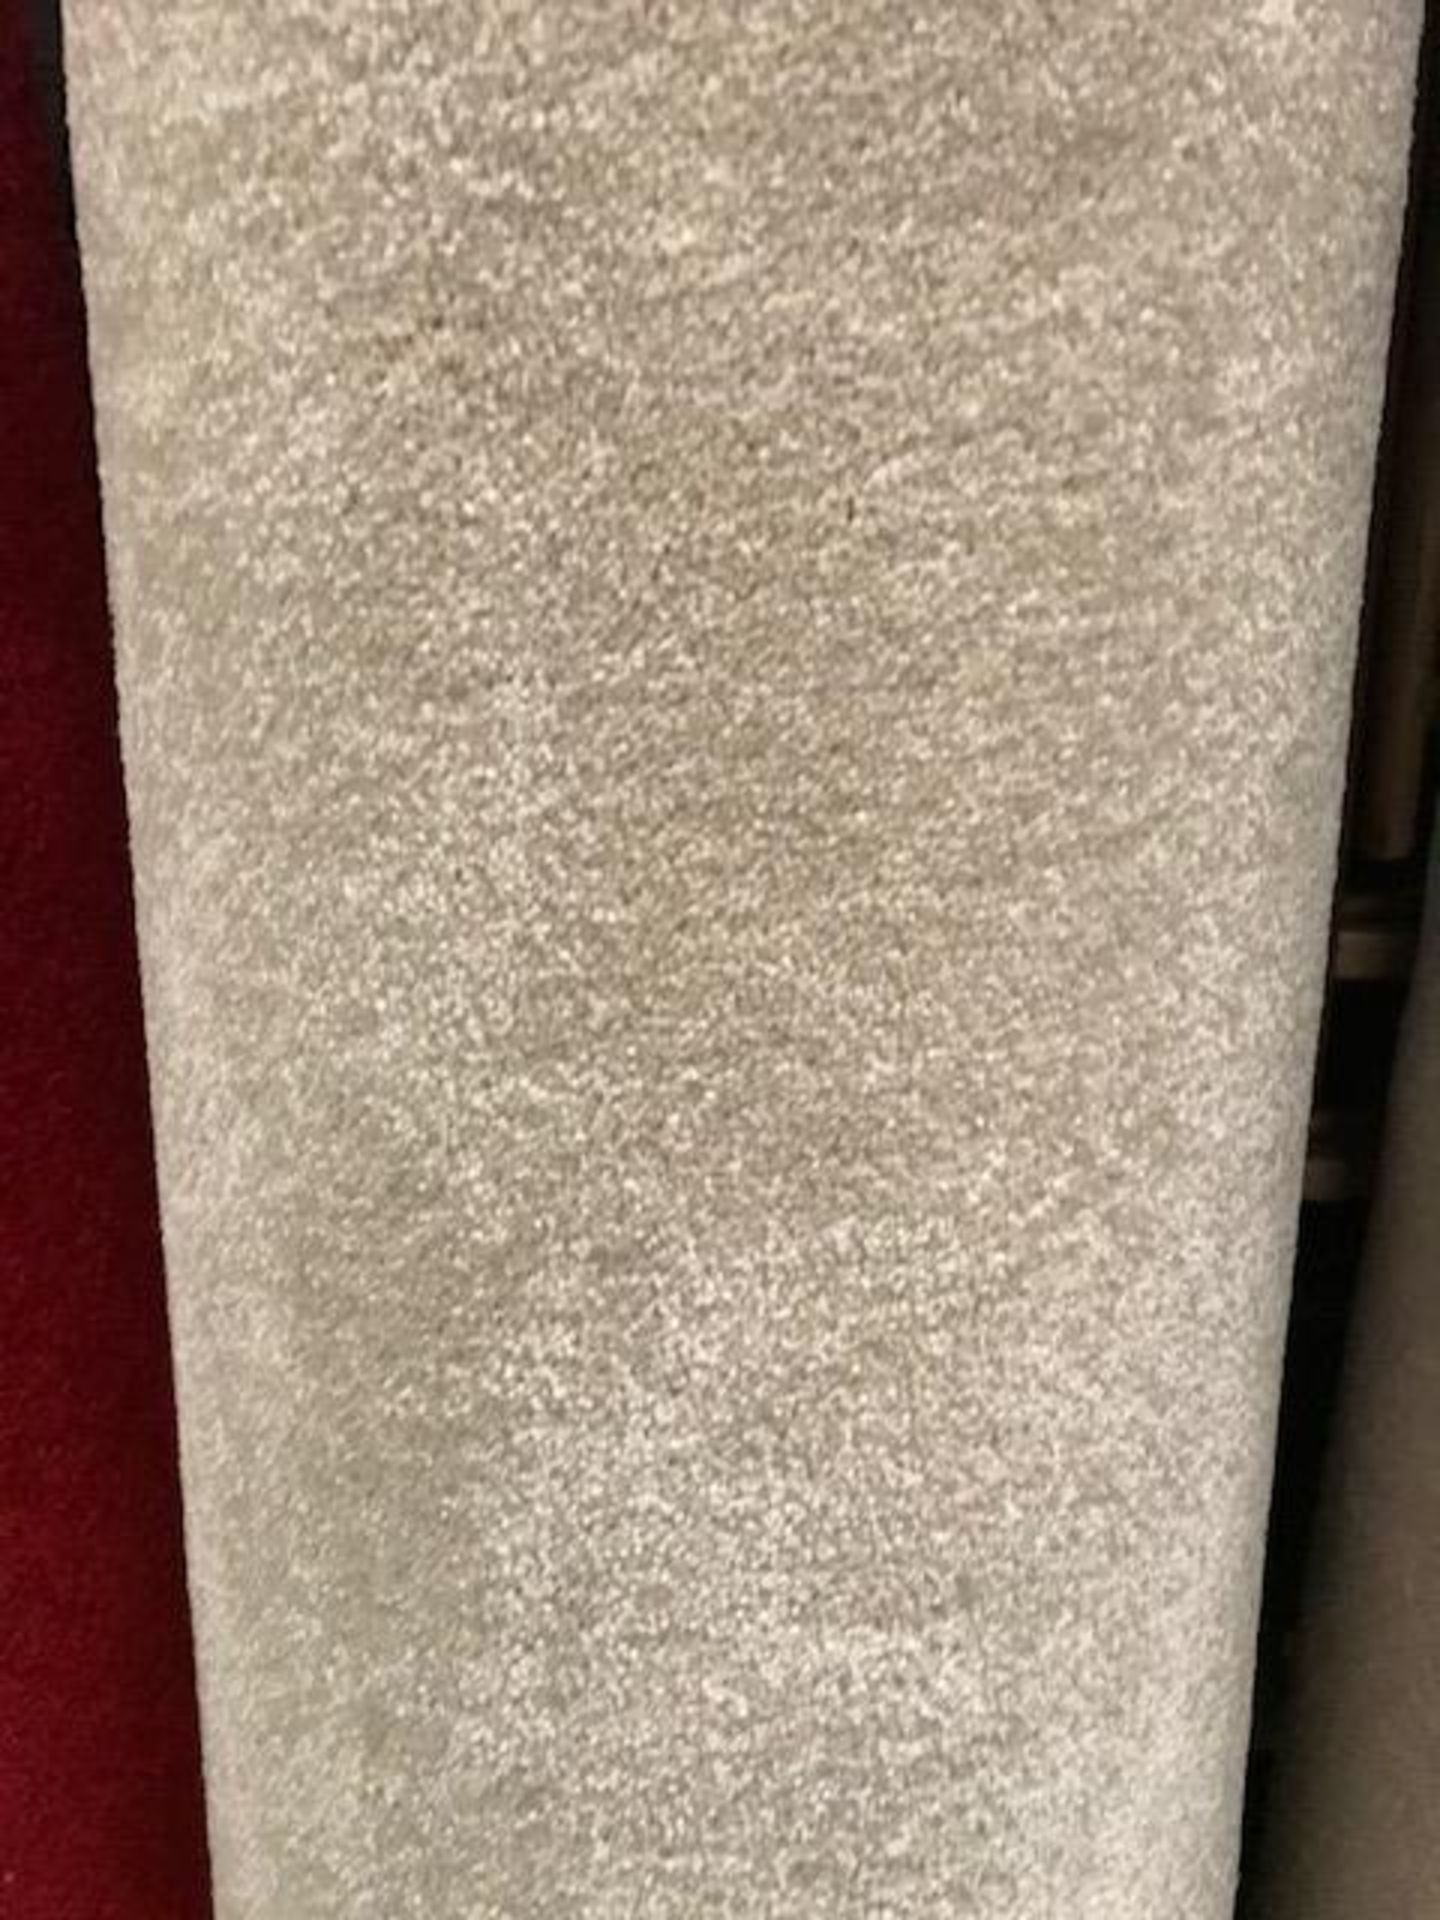 California Cashmere Carpet 2.8M X 5M - Image 3 of 3